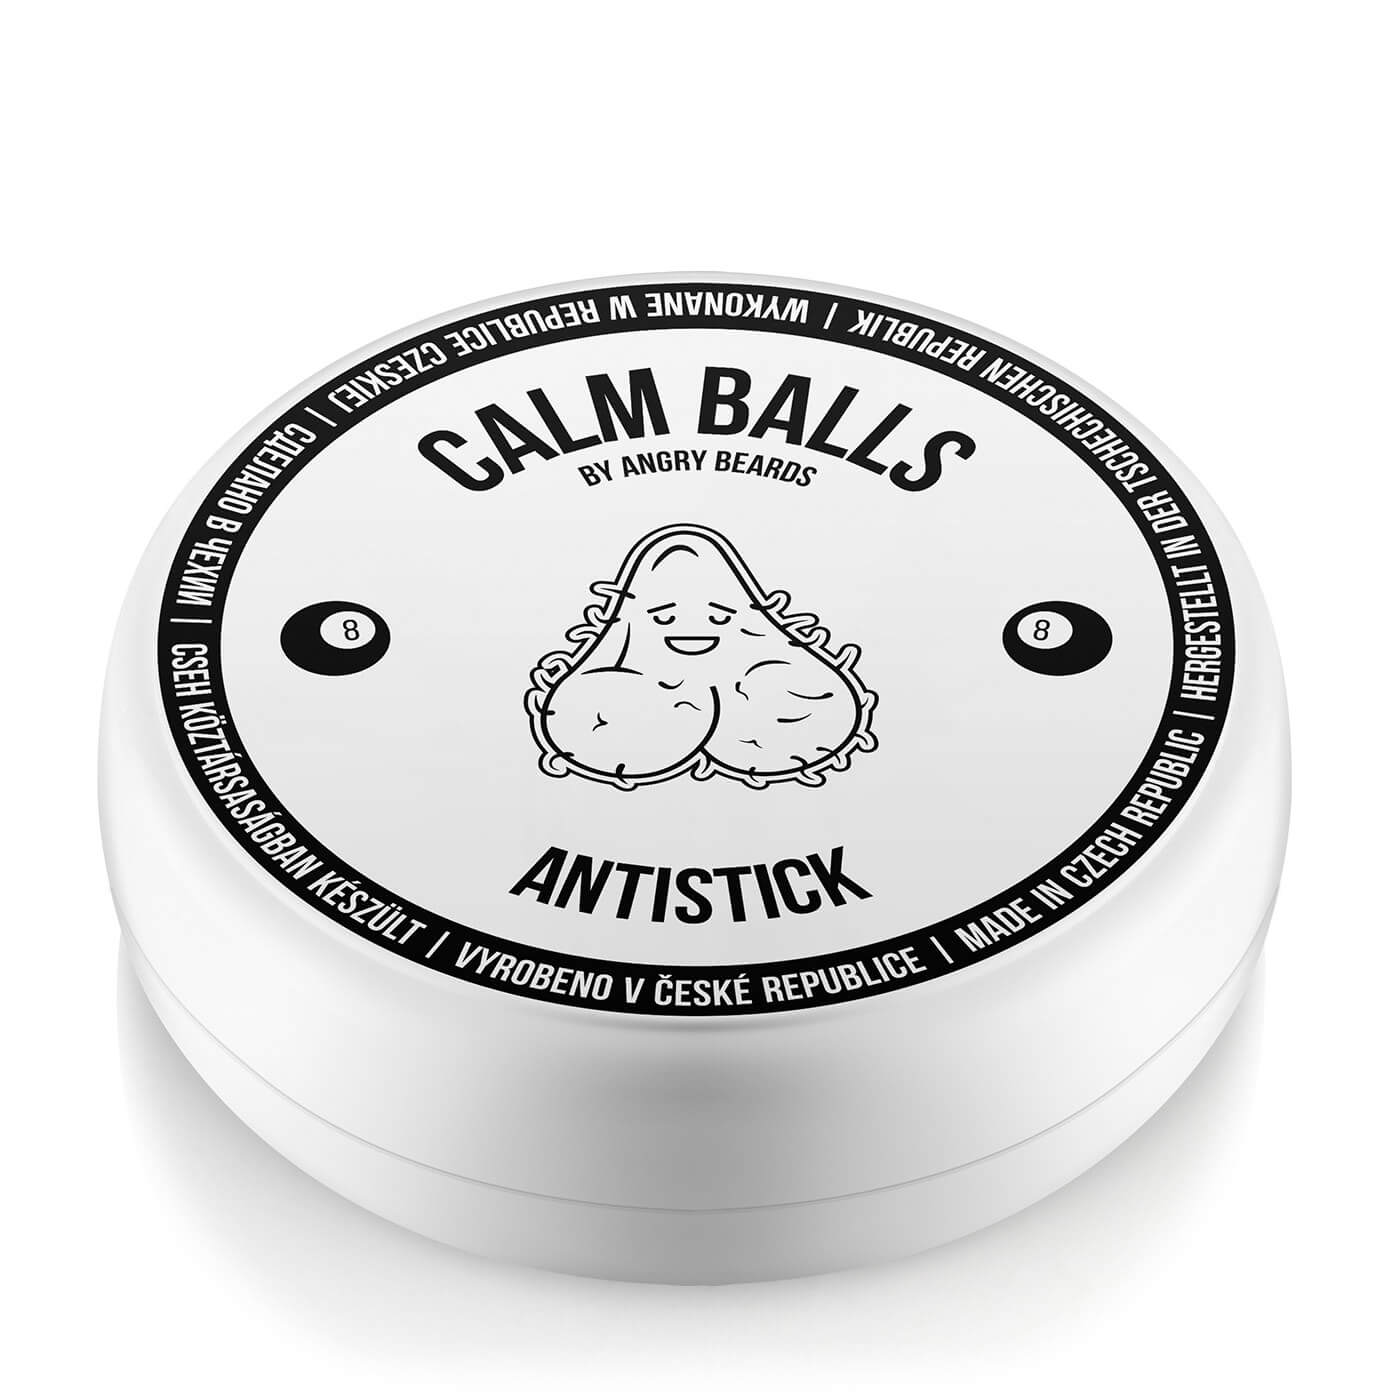 Angry Beards Sportovní lubrikant na intimní partie Antistick (Calm Balls) 84 g